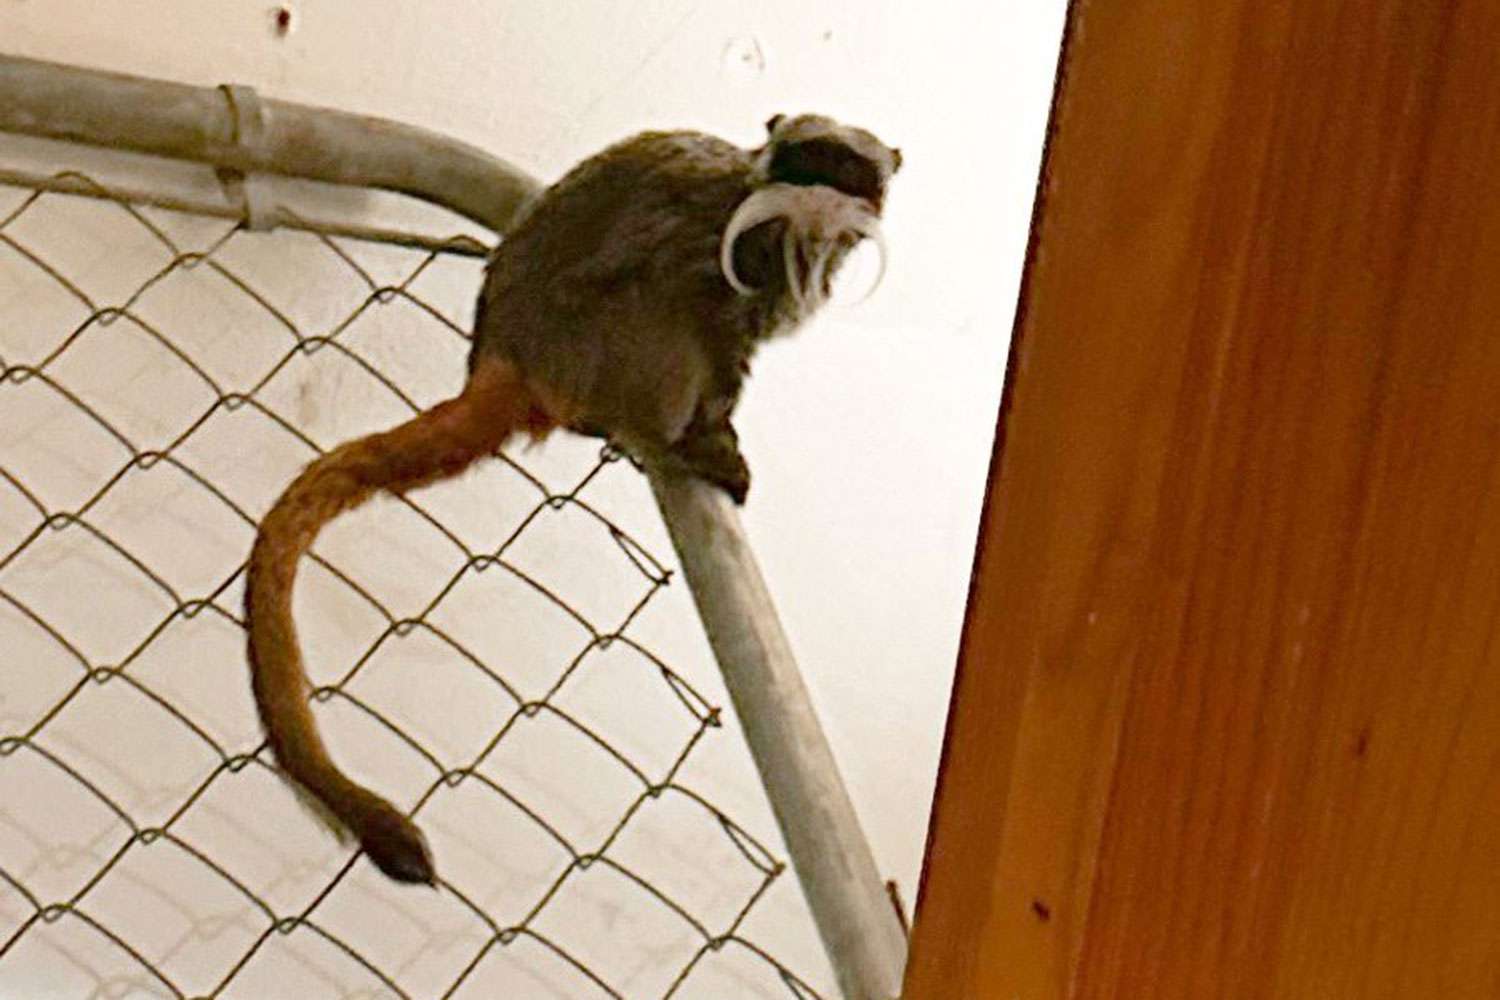 Zoológico de Dallas anuncia 'cambios significativos' en el sistema de seguridad luego de la recuperación de monos tití desaparecidos